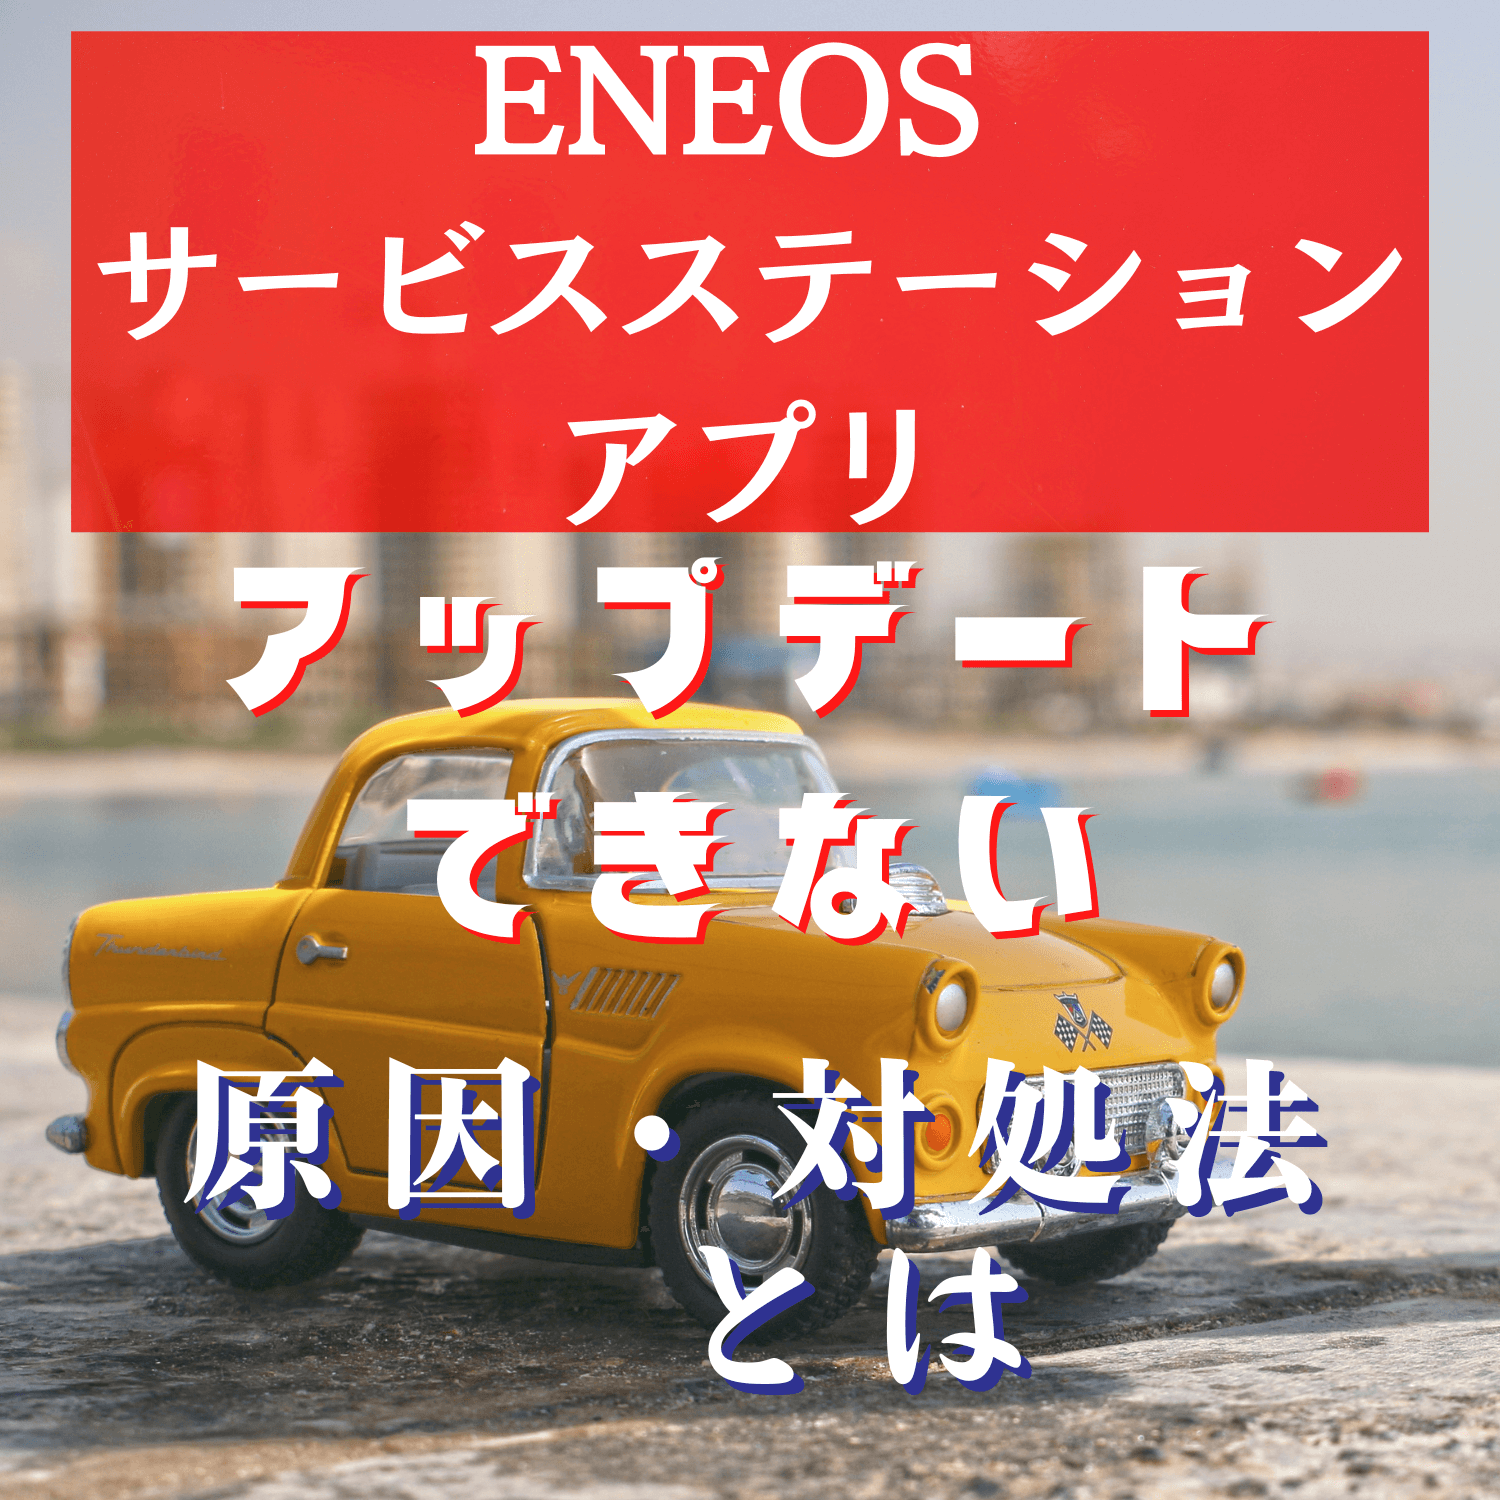 ENEOS サービスステーションアプリ(ENEOS)がアップデートできない原因と対処法とは #ENEOS